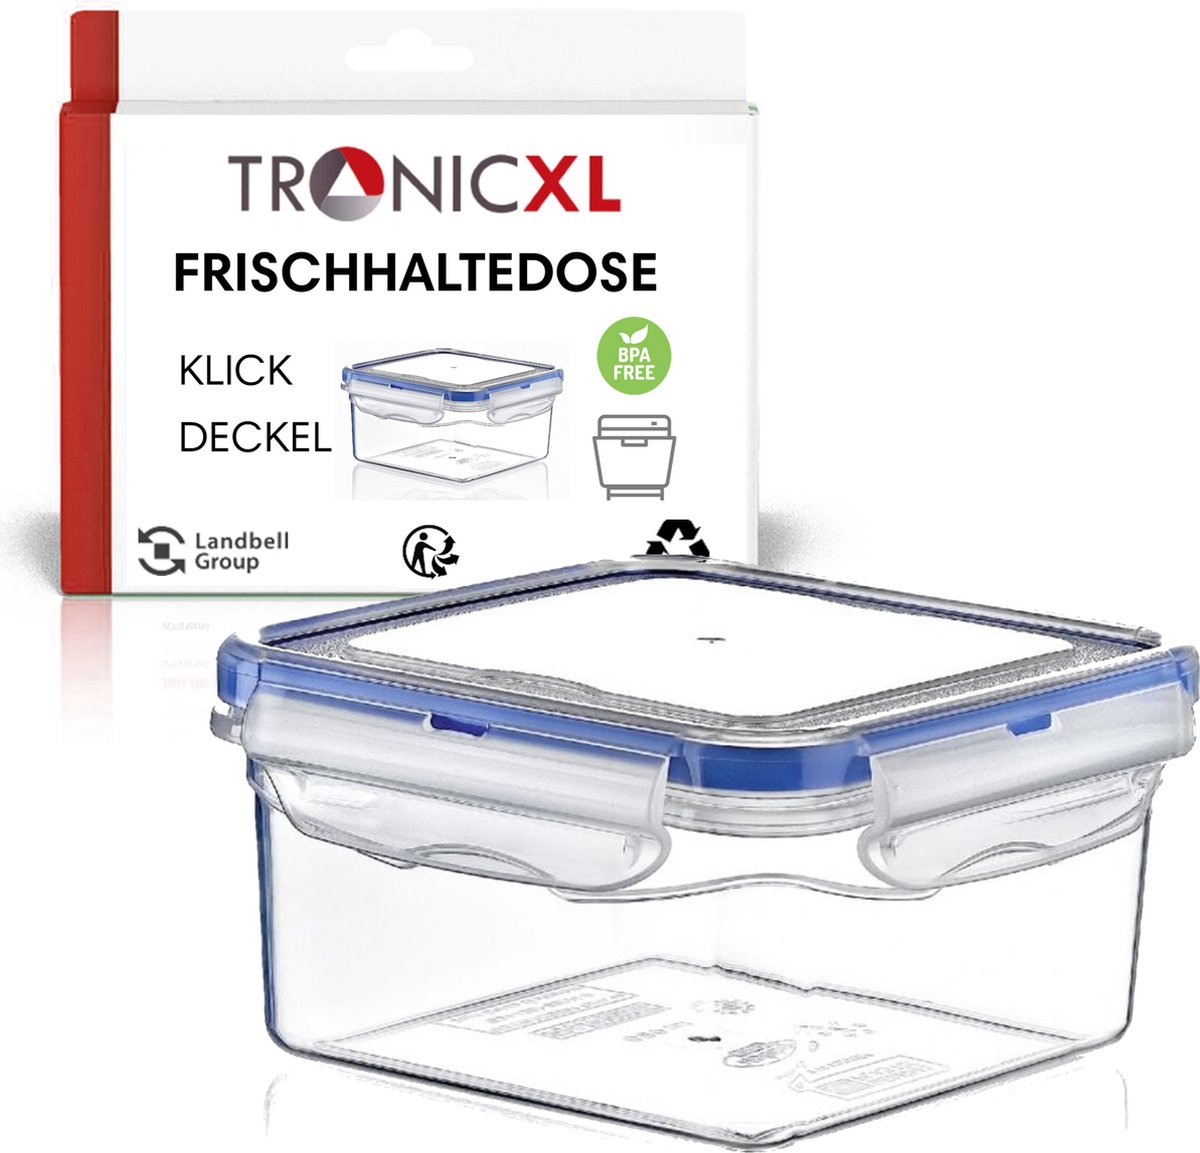 TronicXL 300ml vershouddoos bewaardoos met kliksluiting luchtdicht opbergdoos box container keuken vaatwasser bestendig